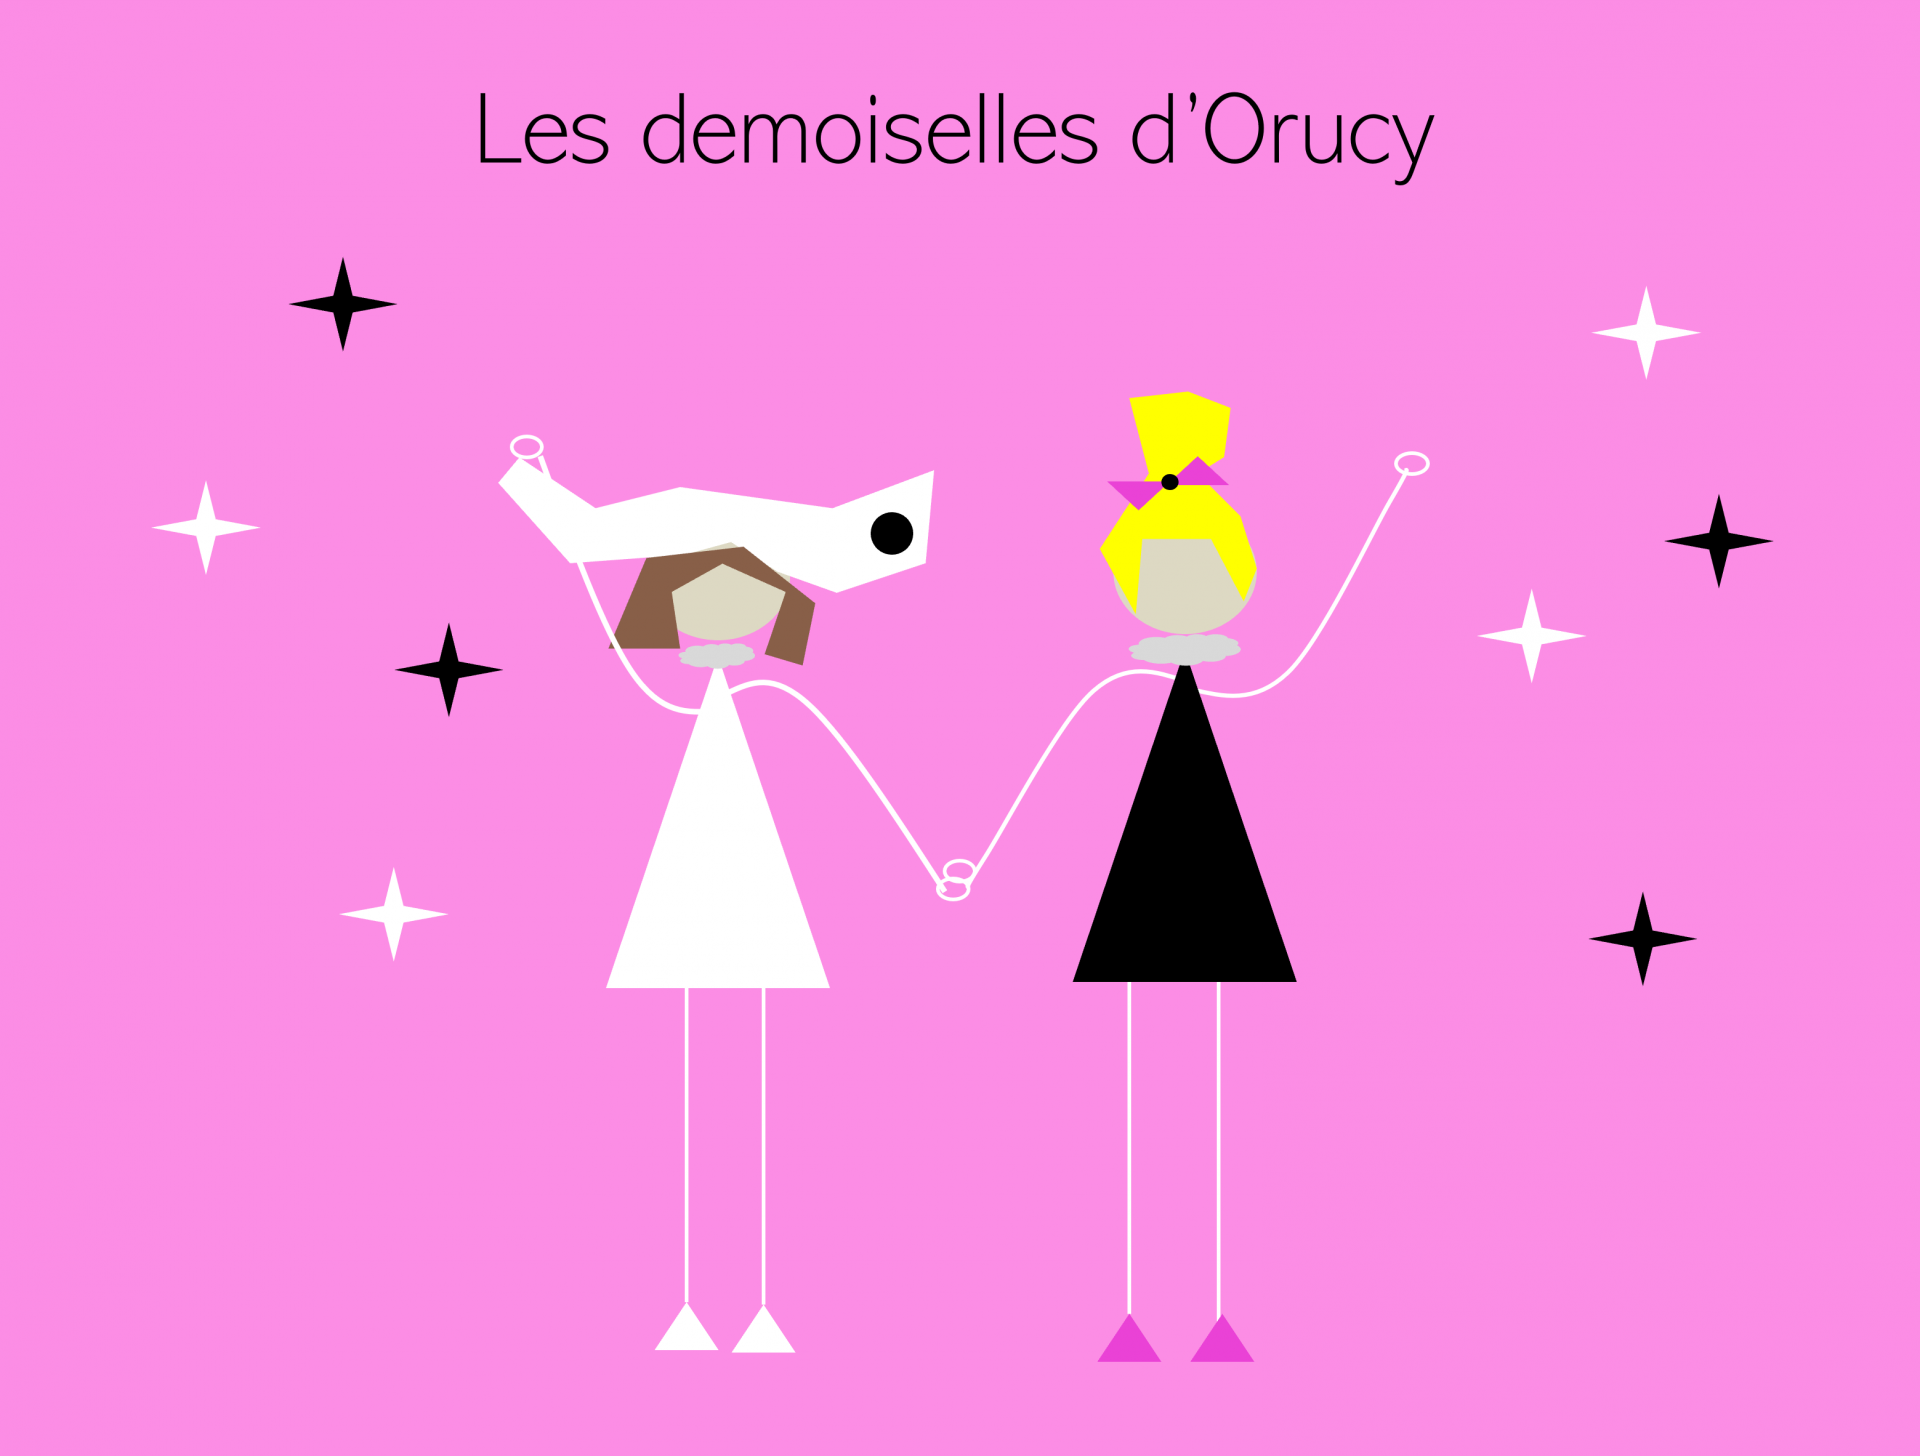 Les demoiselles d'Orucy